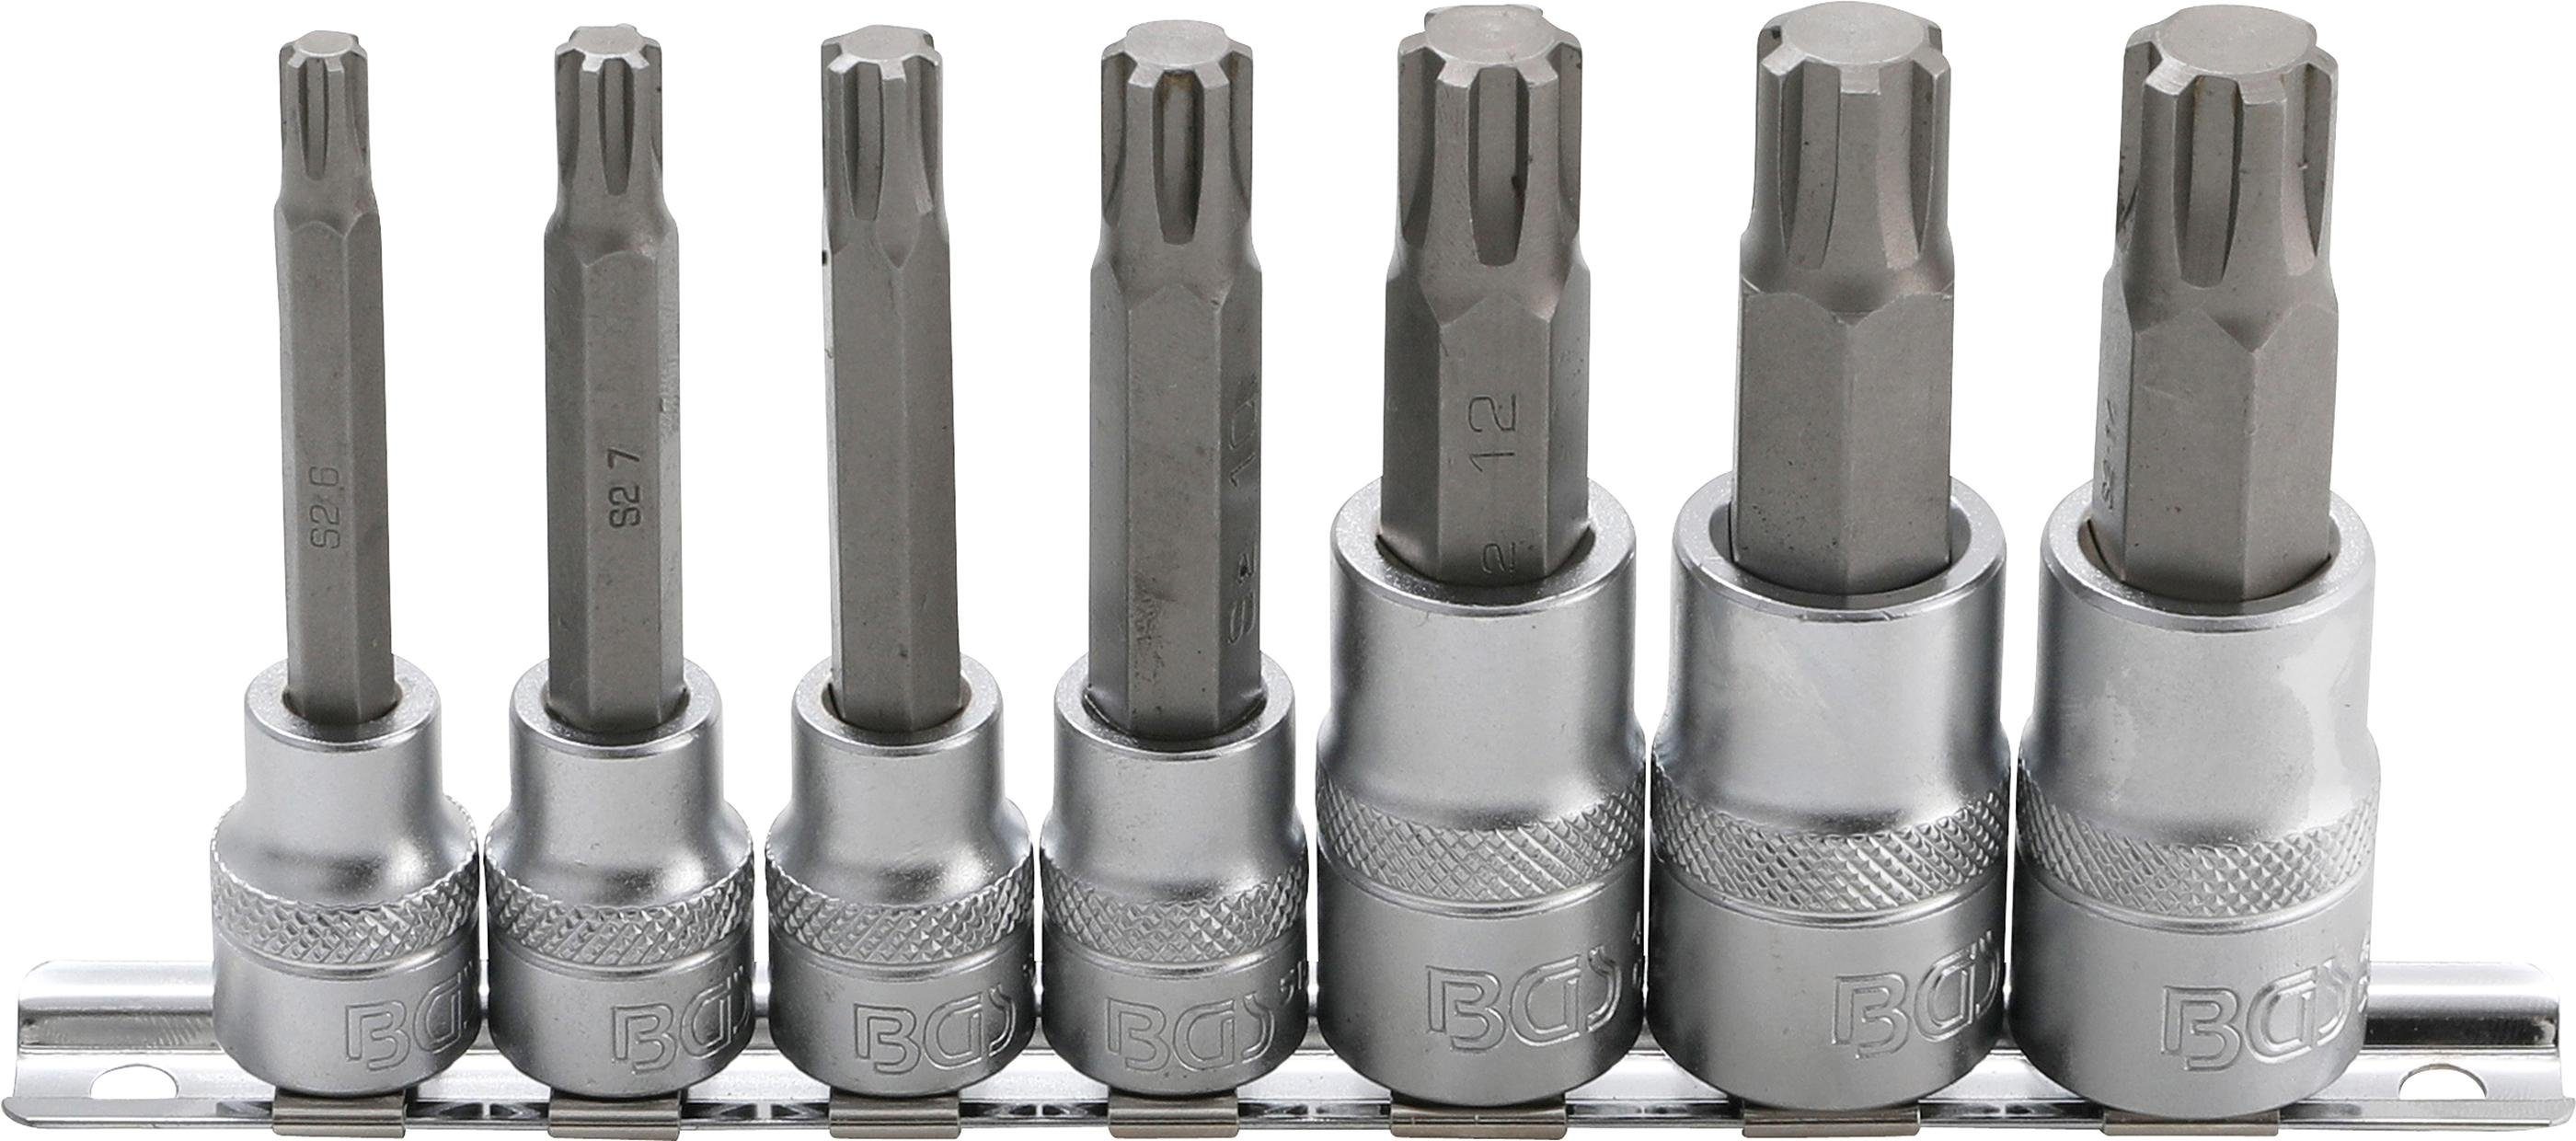 BGS technic Bit-Set Bit-Einsatz-Satz, Antrieb Innenvierkant 10 mm (3/8) / 12,5 mm (1/2), Keil-Profil (für RIBE) M6 - M14, 7-tlg.